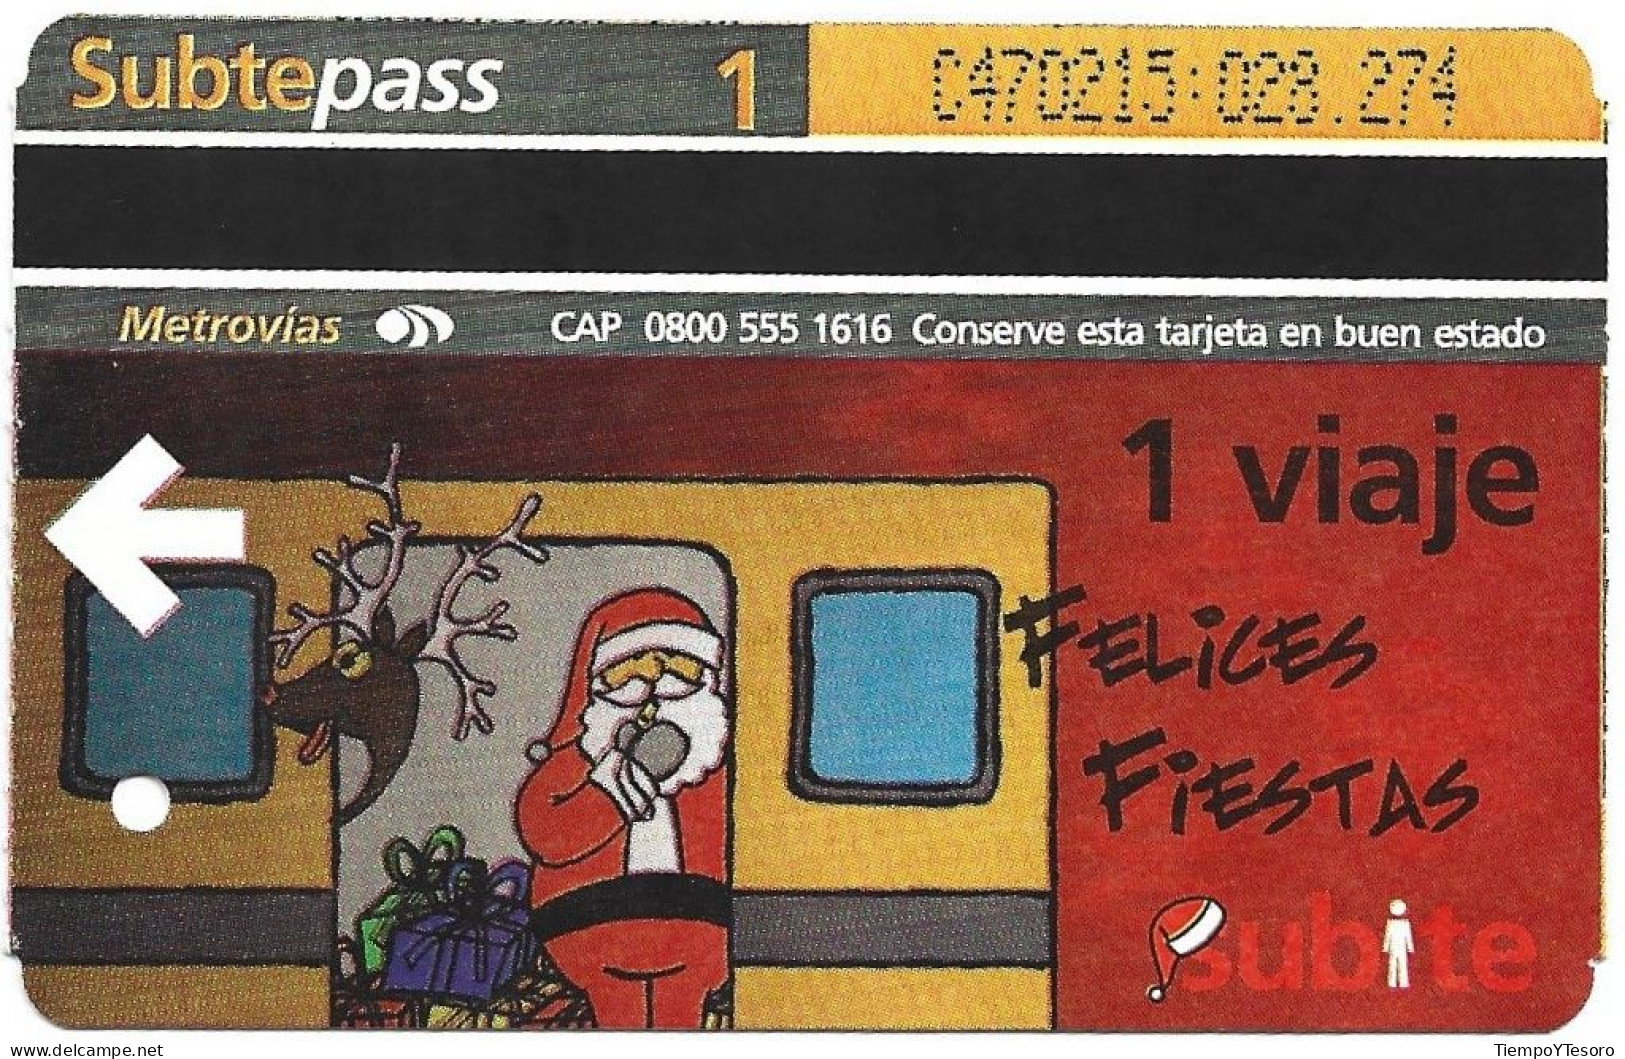 Subtepass - Holidays 4, N°1440 - Natale